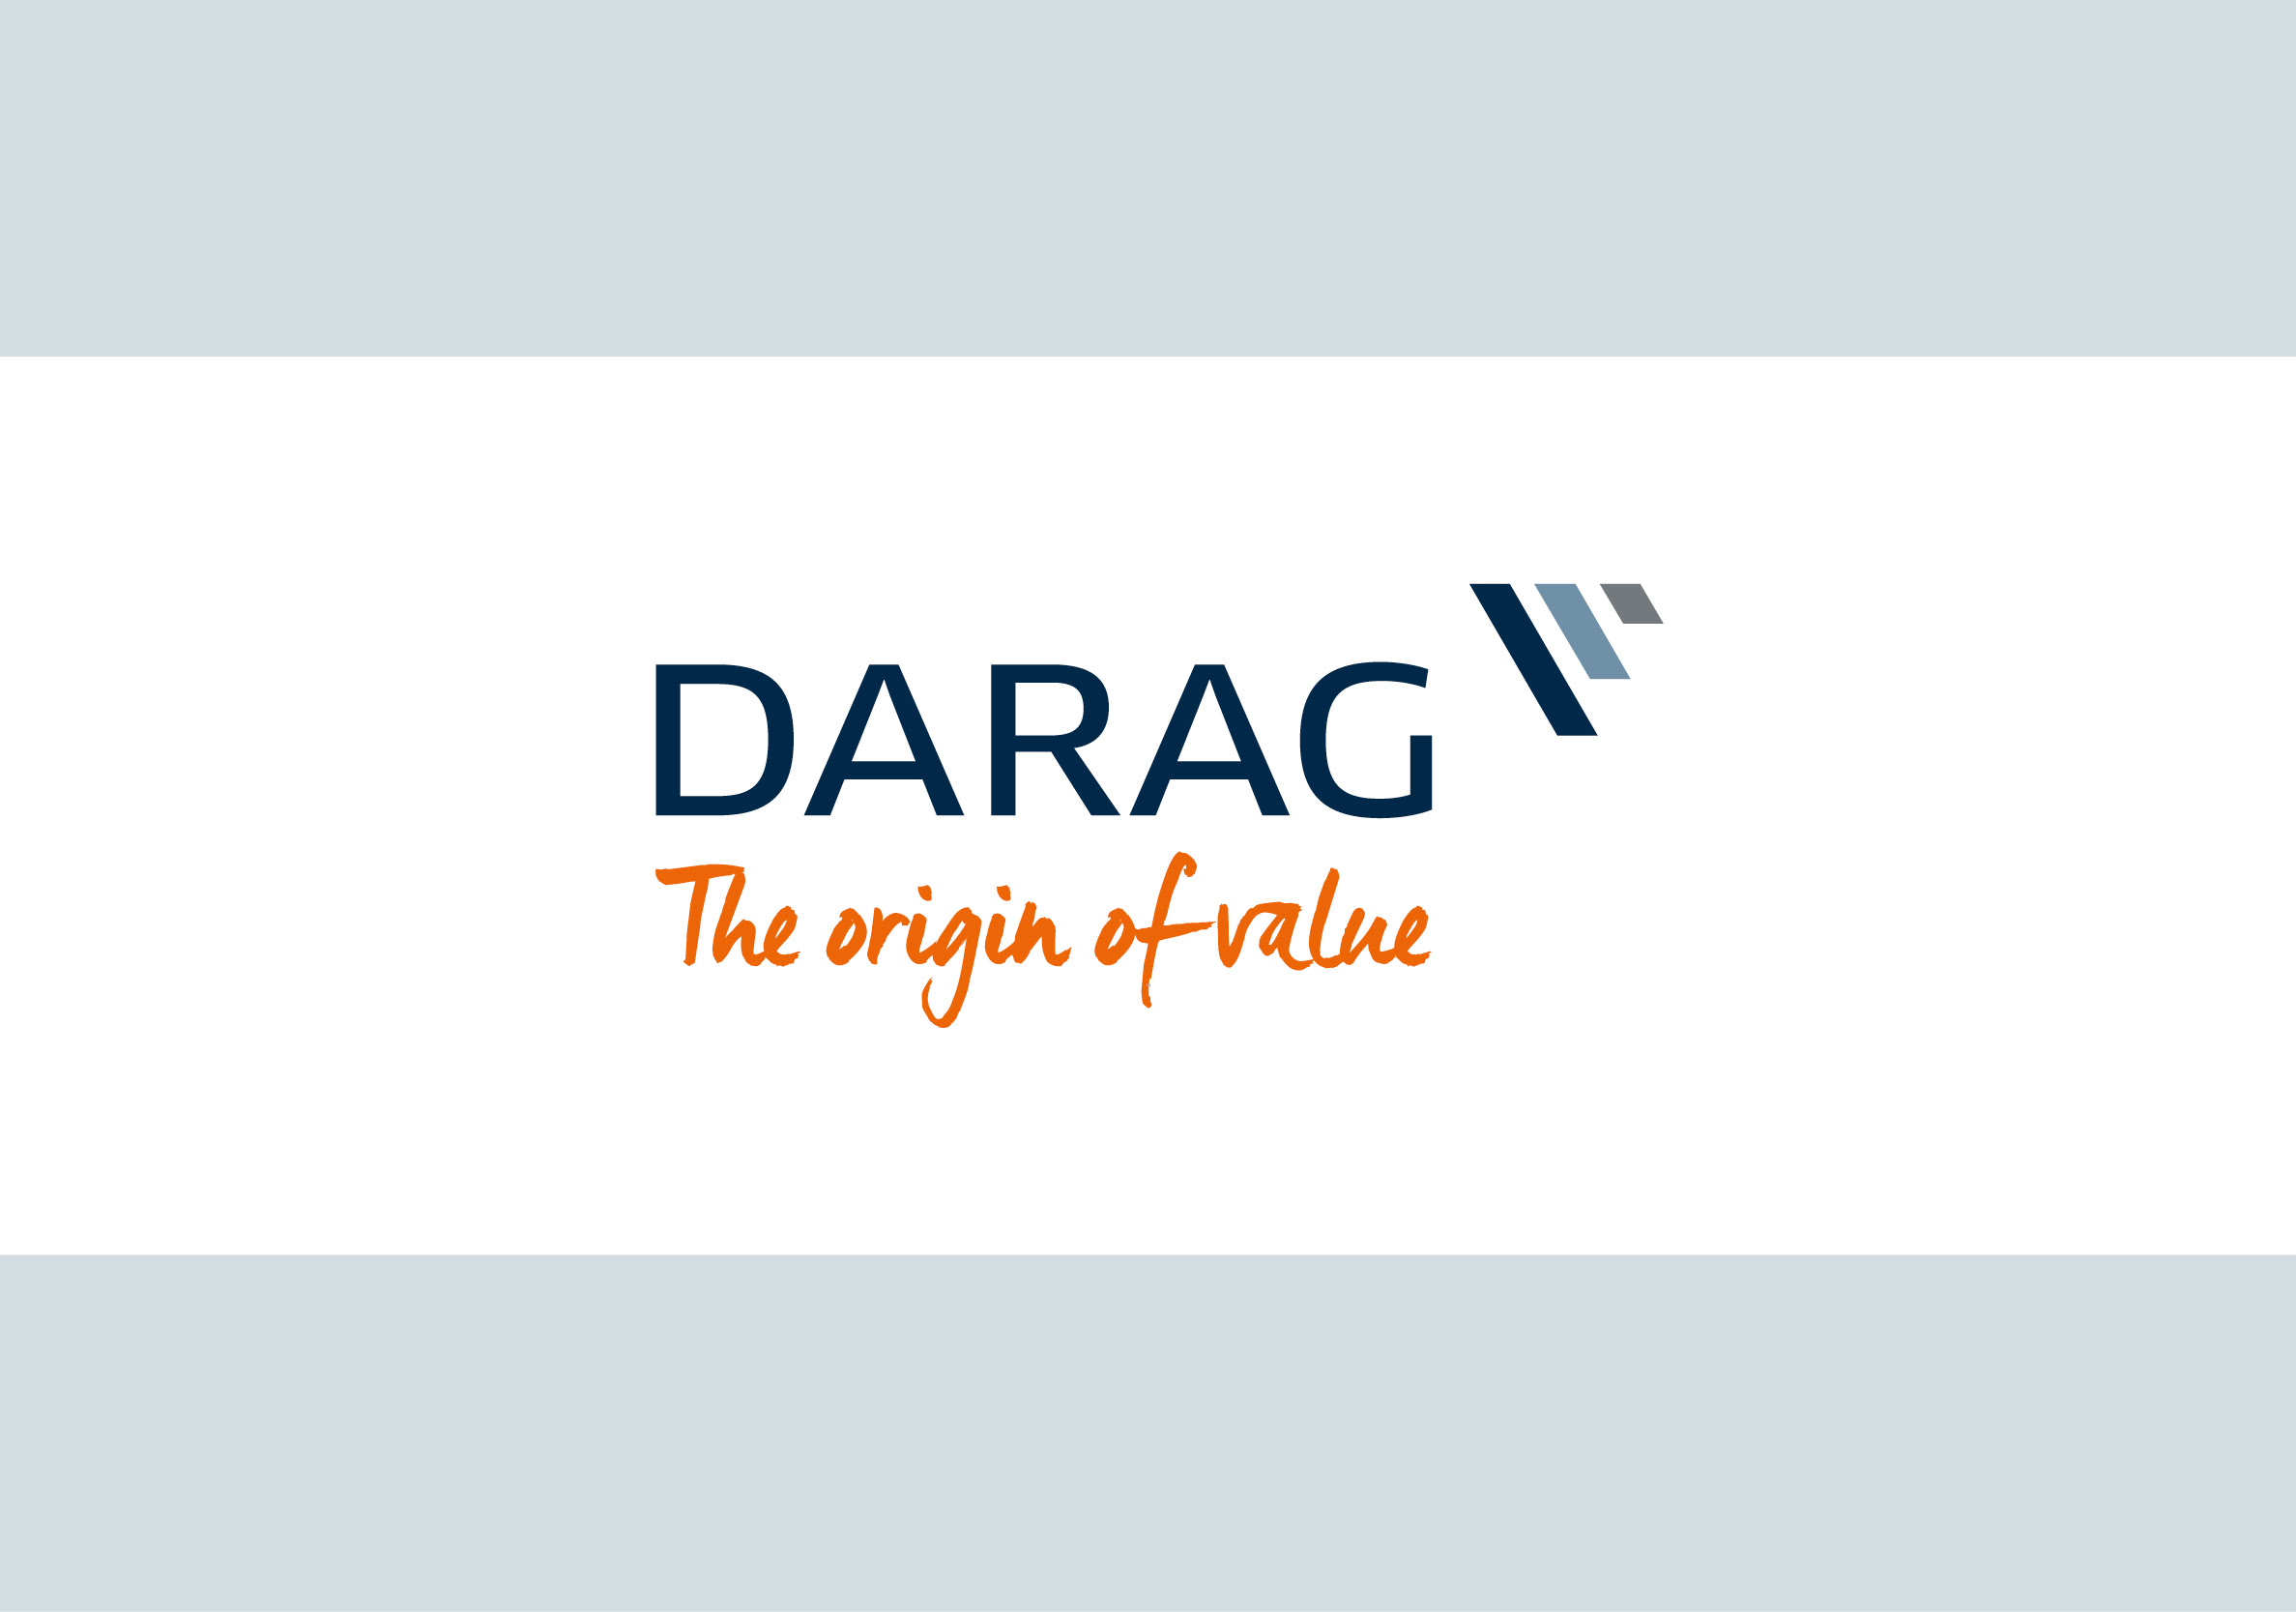 La collaborazione con DARAG Italia ha riguardato la creazione del sito web della società: dalla strutturazione della mappa del sito fino alla stesura dei contenuti. L’affiancamento è poi proseguito negli anni con attività di comunicazione e di marketing per i clienti e per la rete.